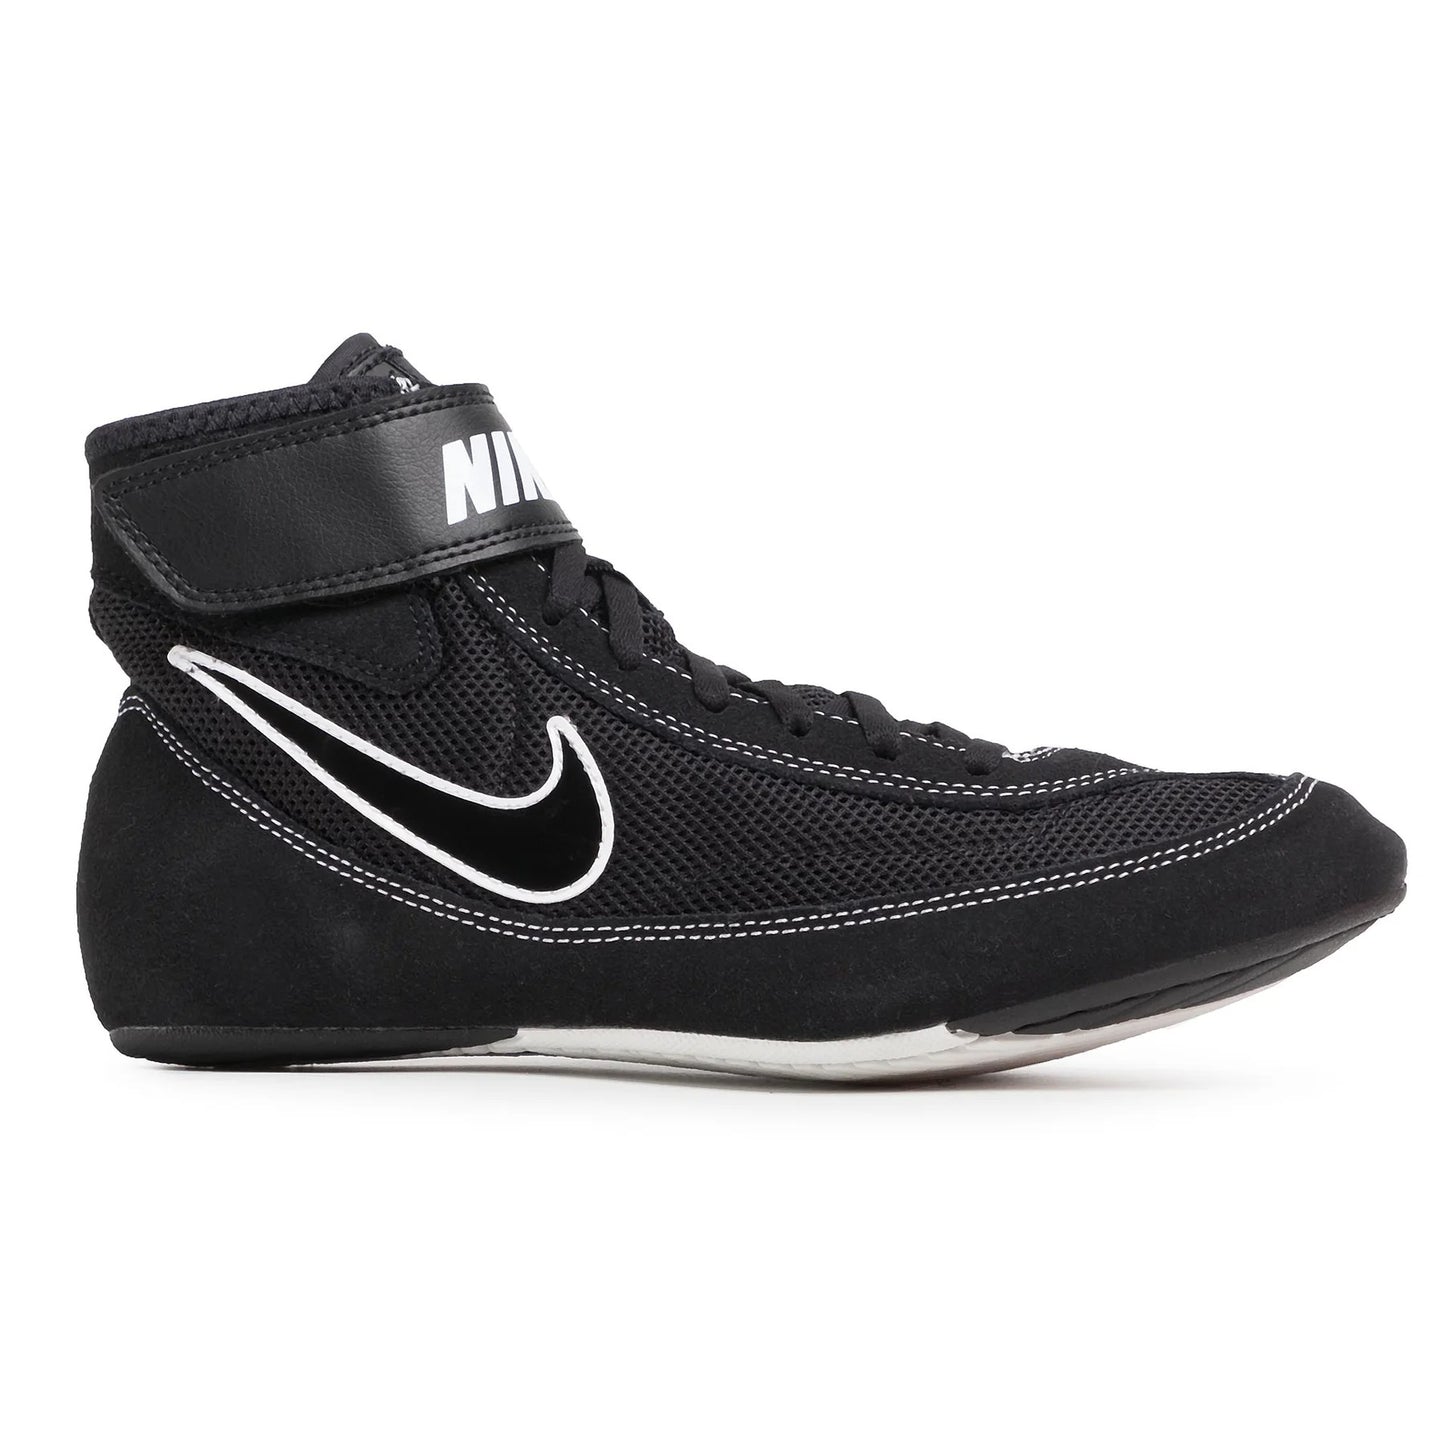 Chaussures de lutte Speedsweep VII Nike - Noir/Noir